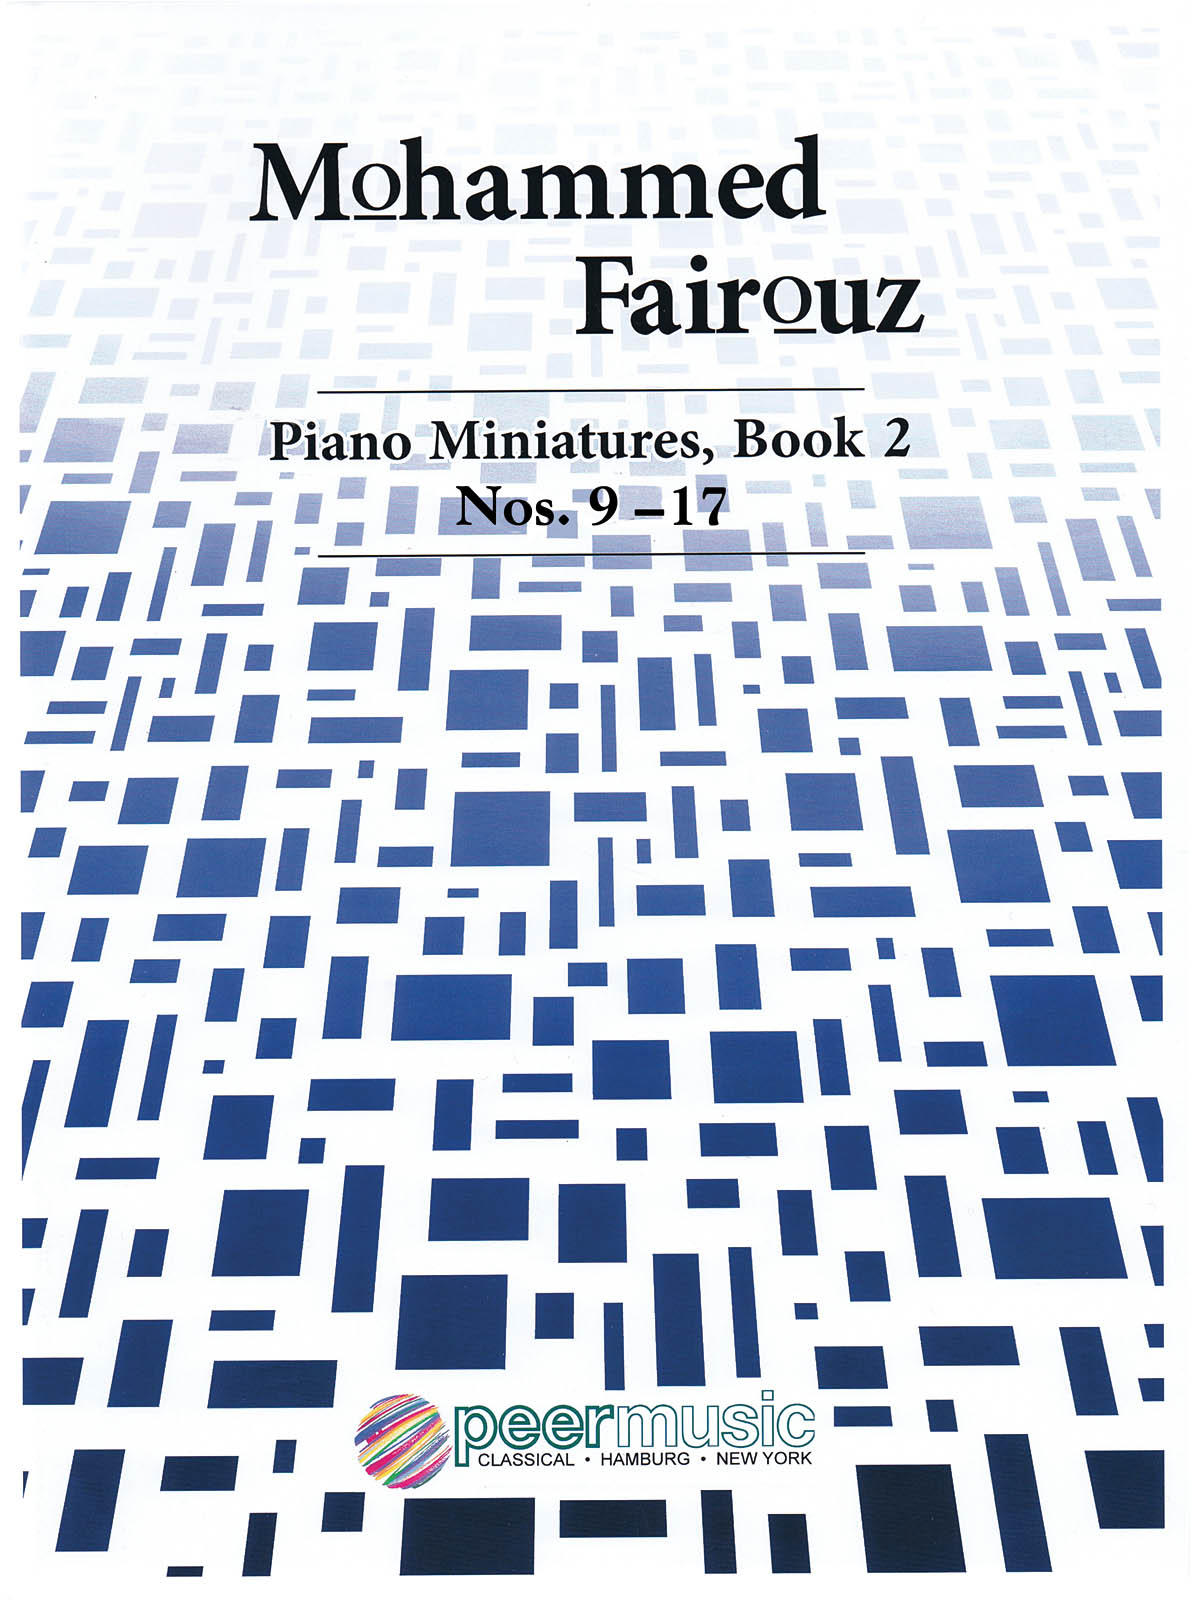 Piano Miniatures Book 2, Nos. 9-17